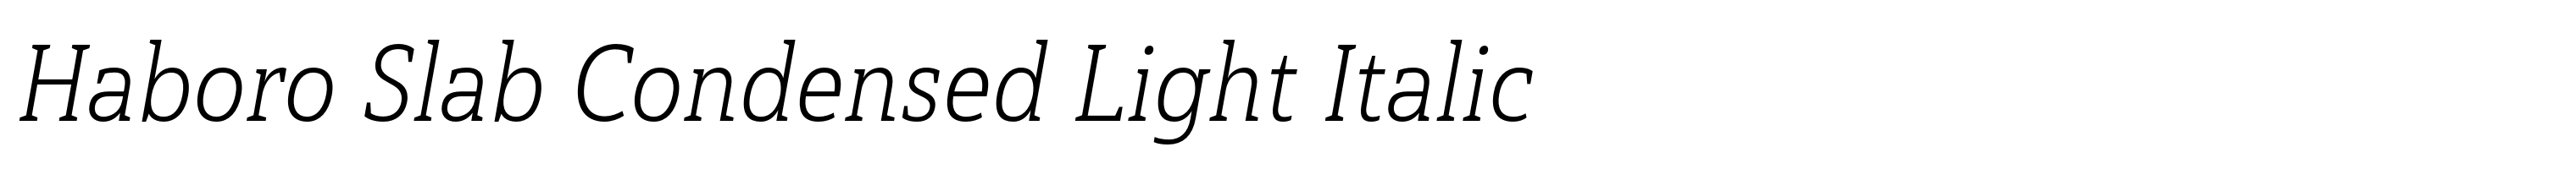 Haboro Slab Condensed Light Italic